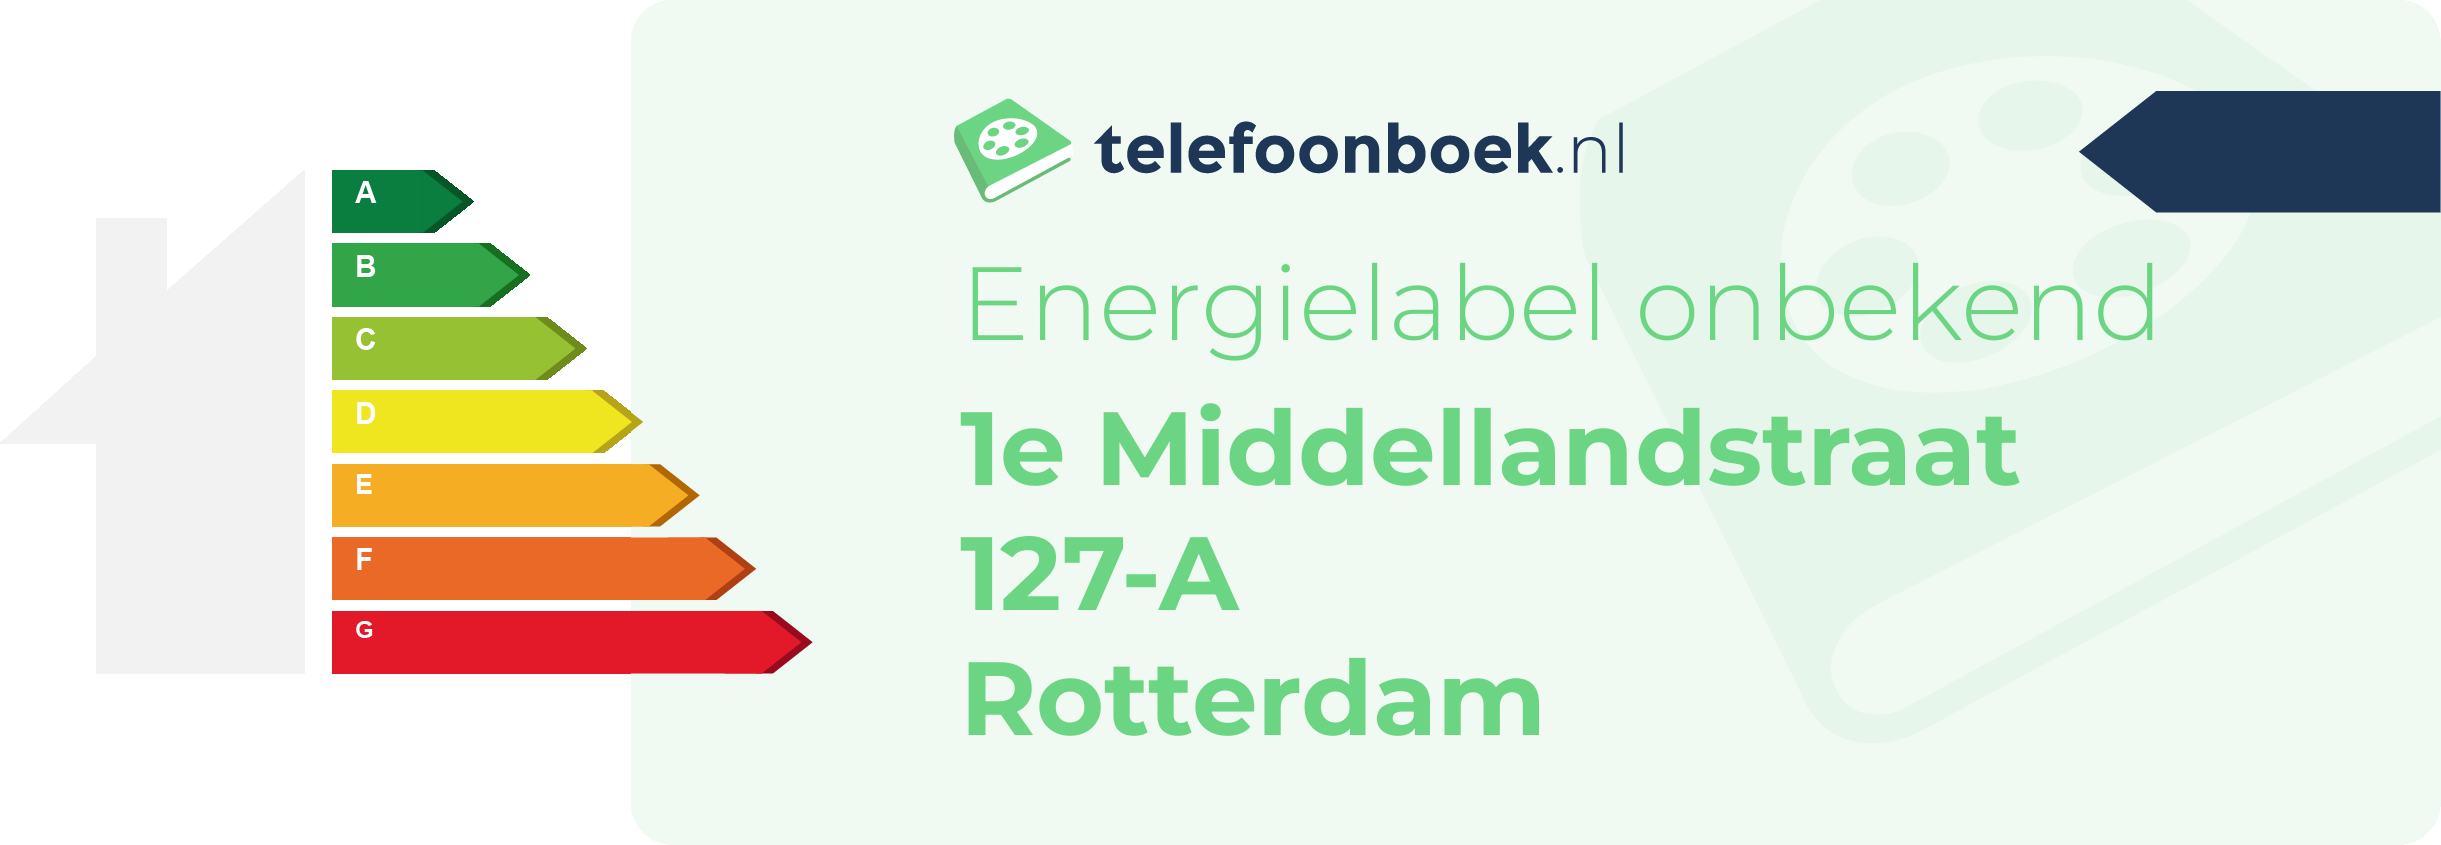 Energielabel 1e Middellandstraat 127-A Rotterdam